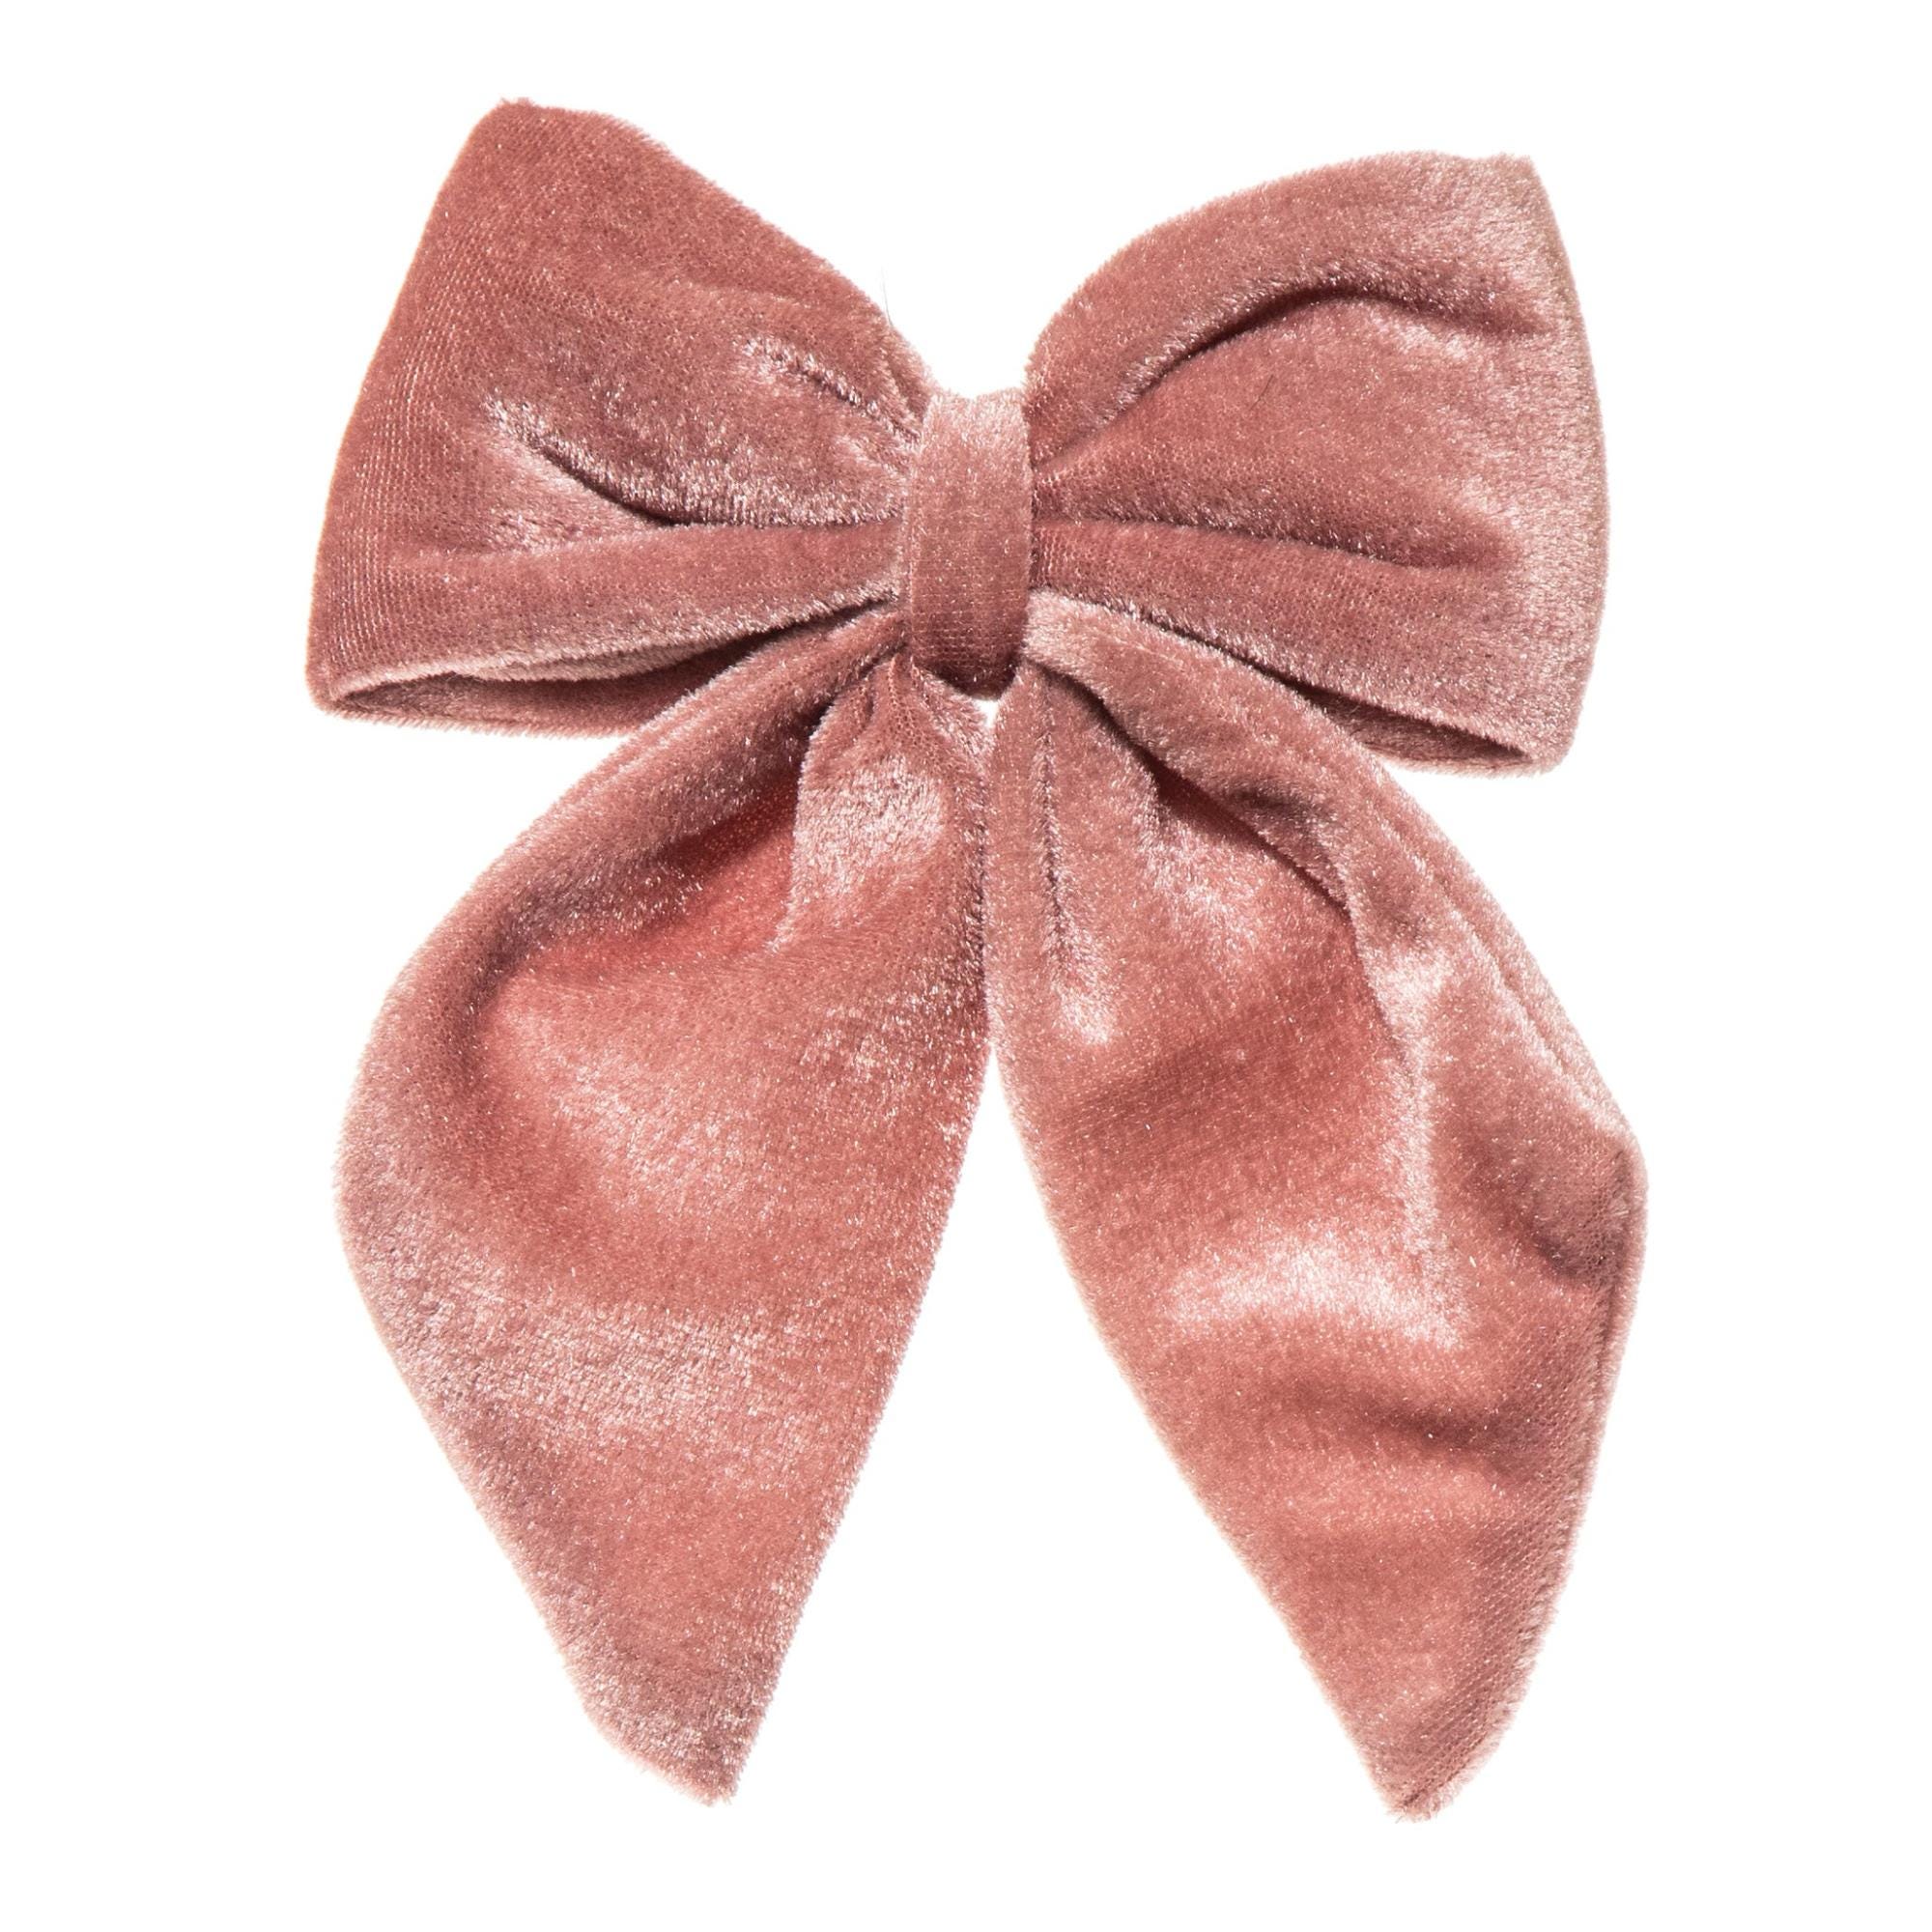 Fiocco natalizio H 15 cm, L 13 cm, colore rosa